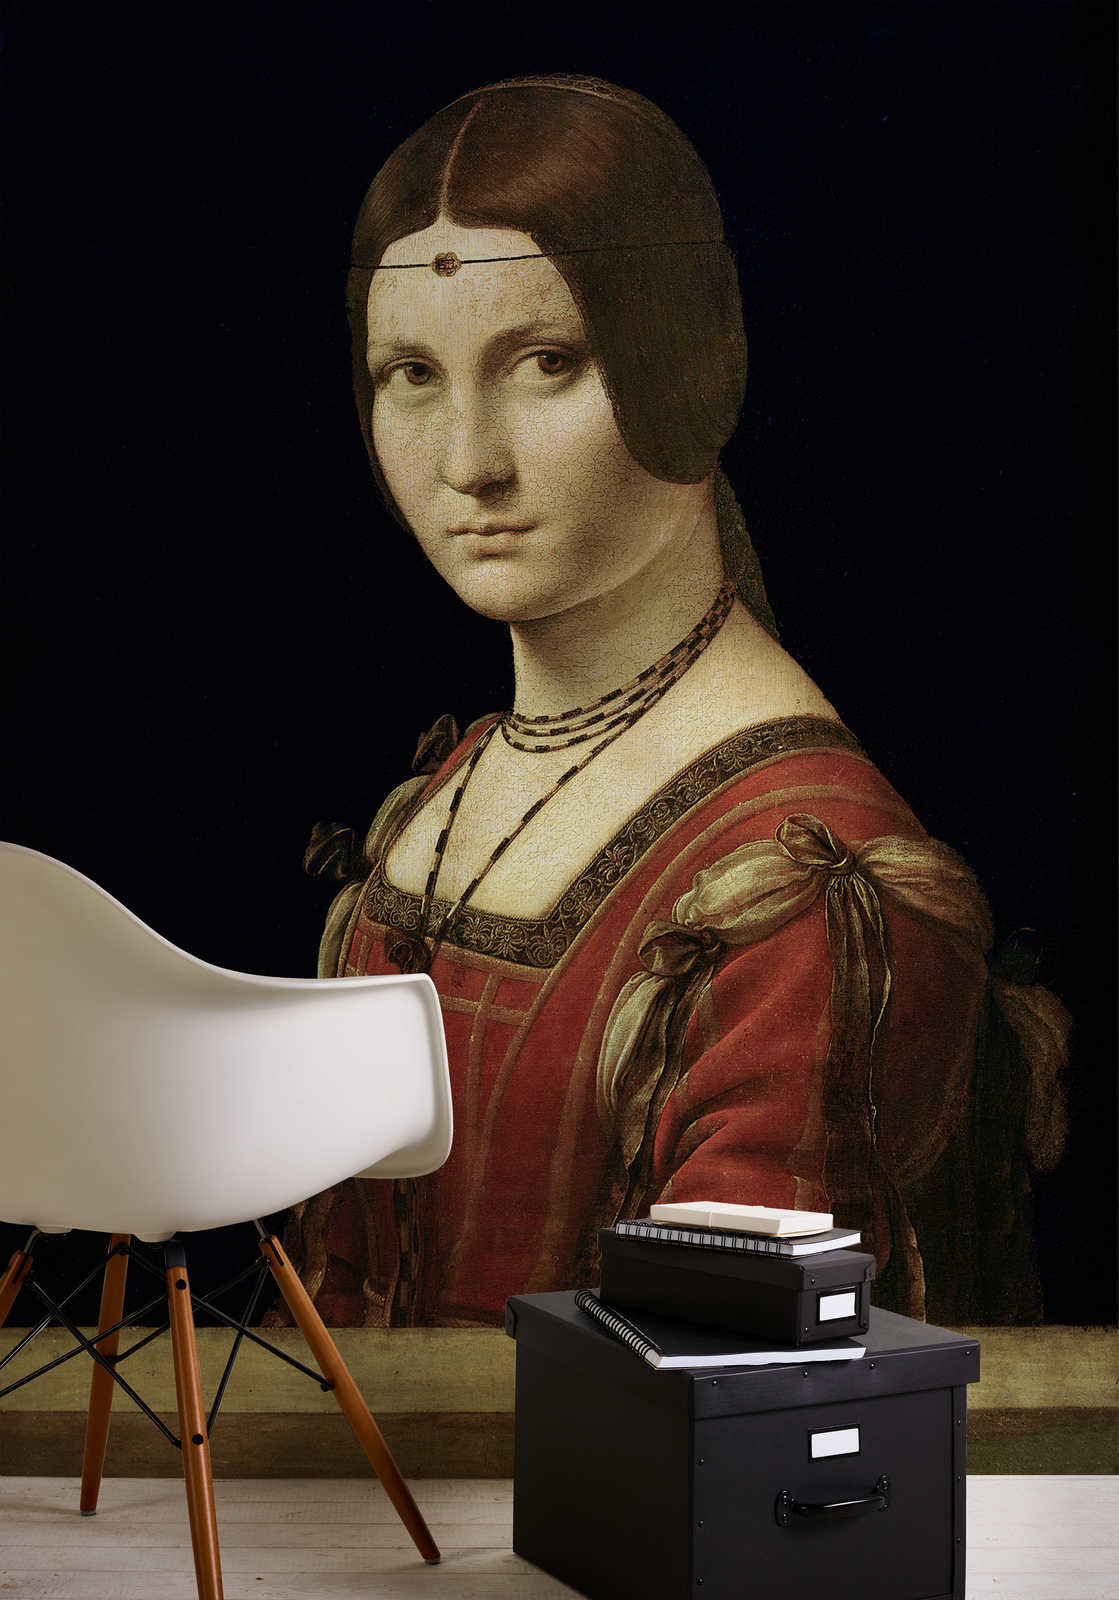             Papier peint panoramique "Portrait d'une dame de la cour de Milan" par Léonard de Vinci
        